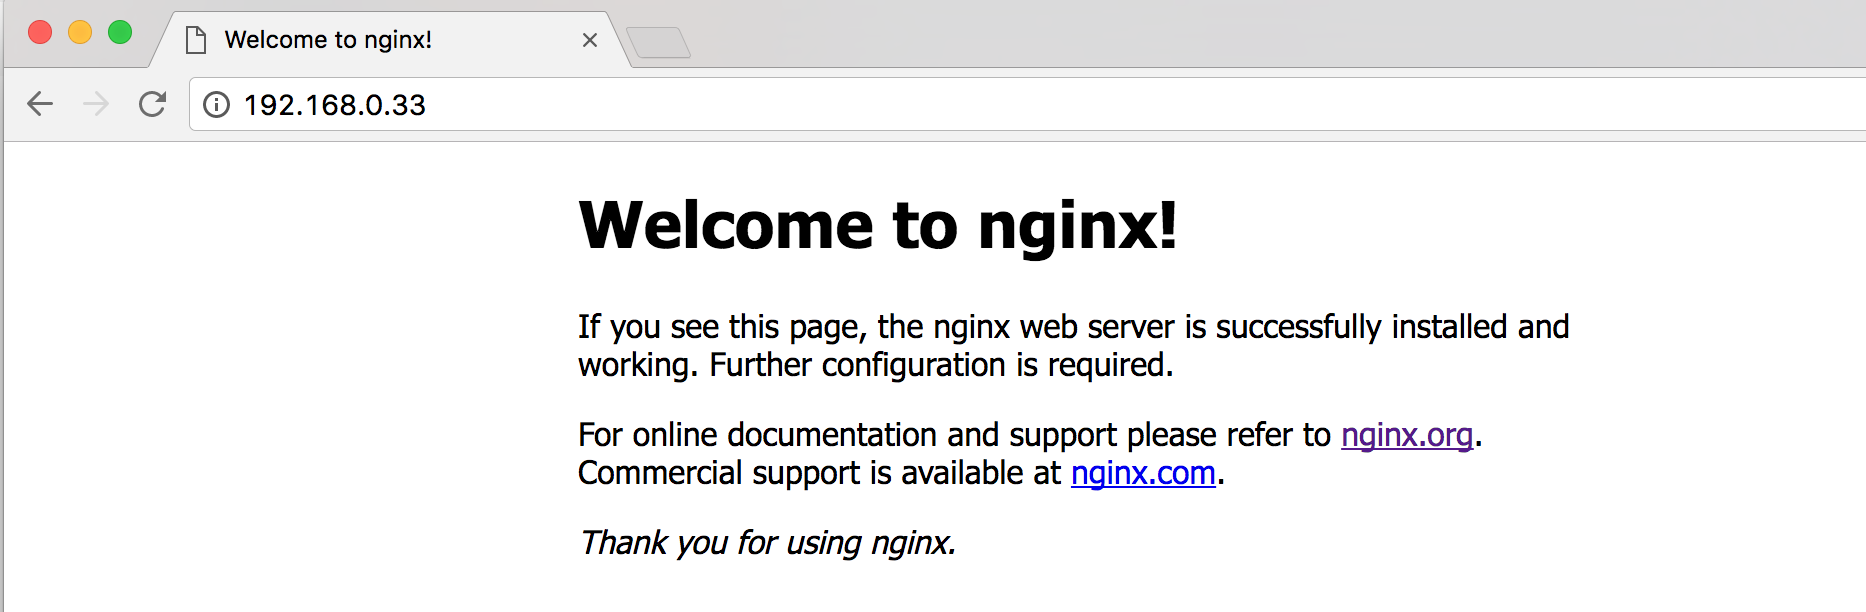 Localhost Welcome to nginx. Nginx web Server successfully installed Ubuntu. Nginx index html